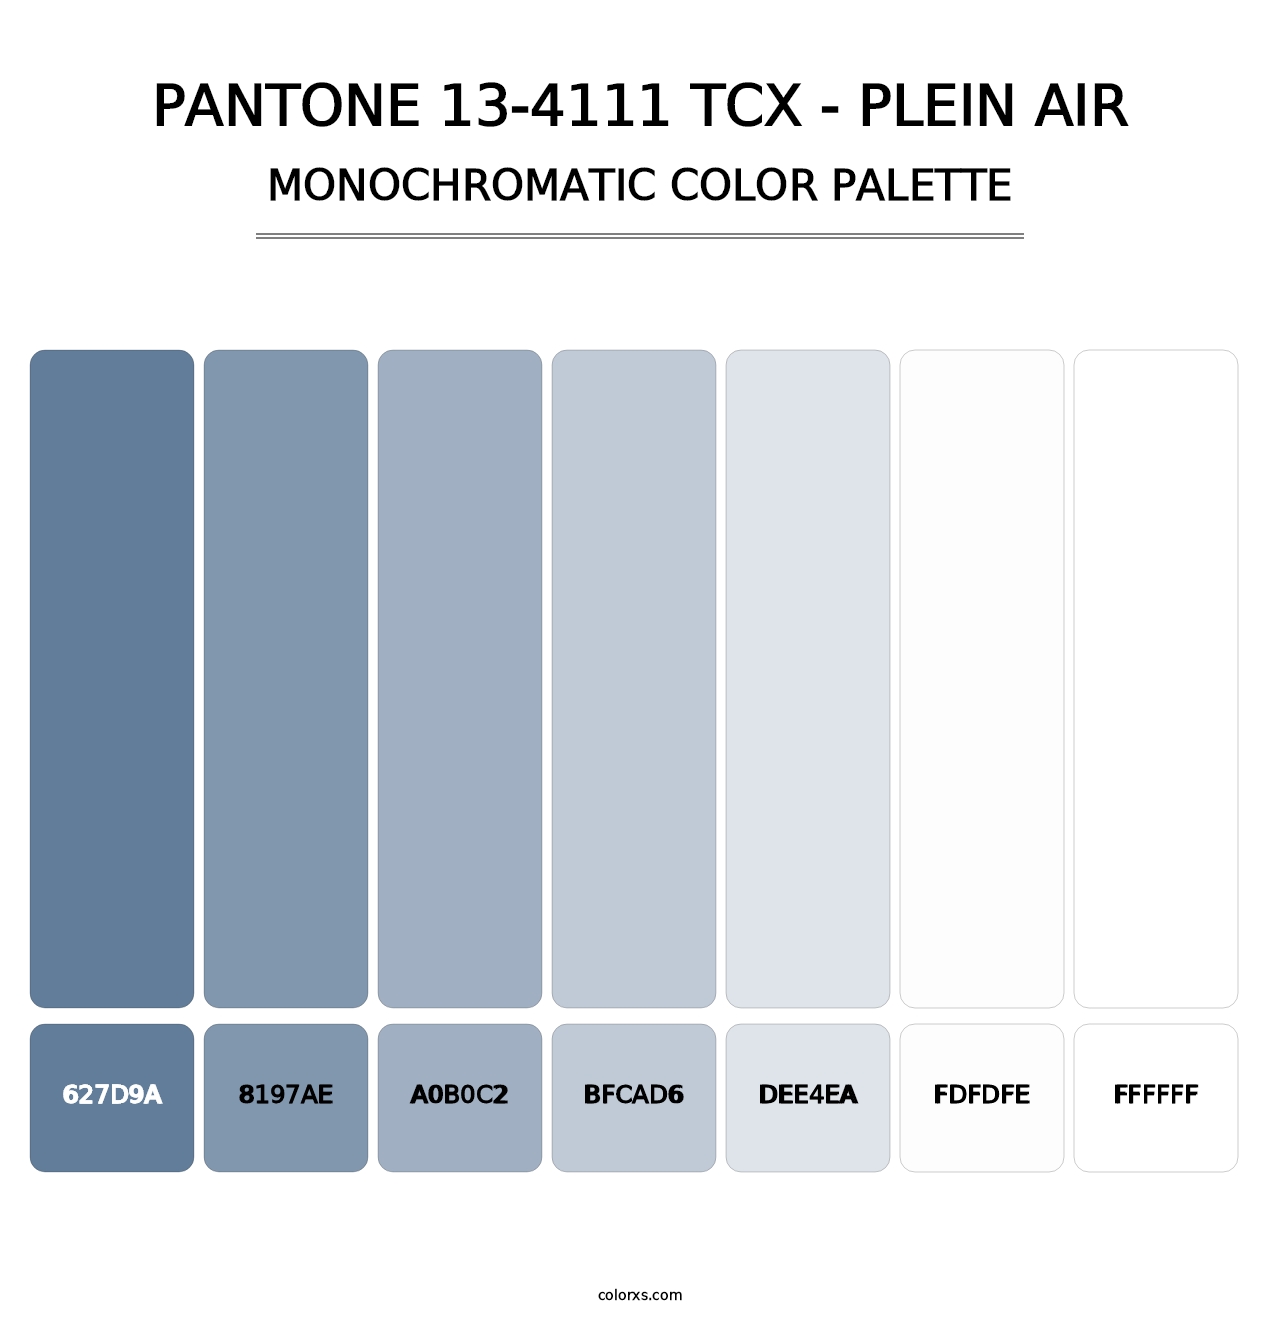 PANTONE 13-4111 TCX - Plein Air - Monochromatic Color Palette